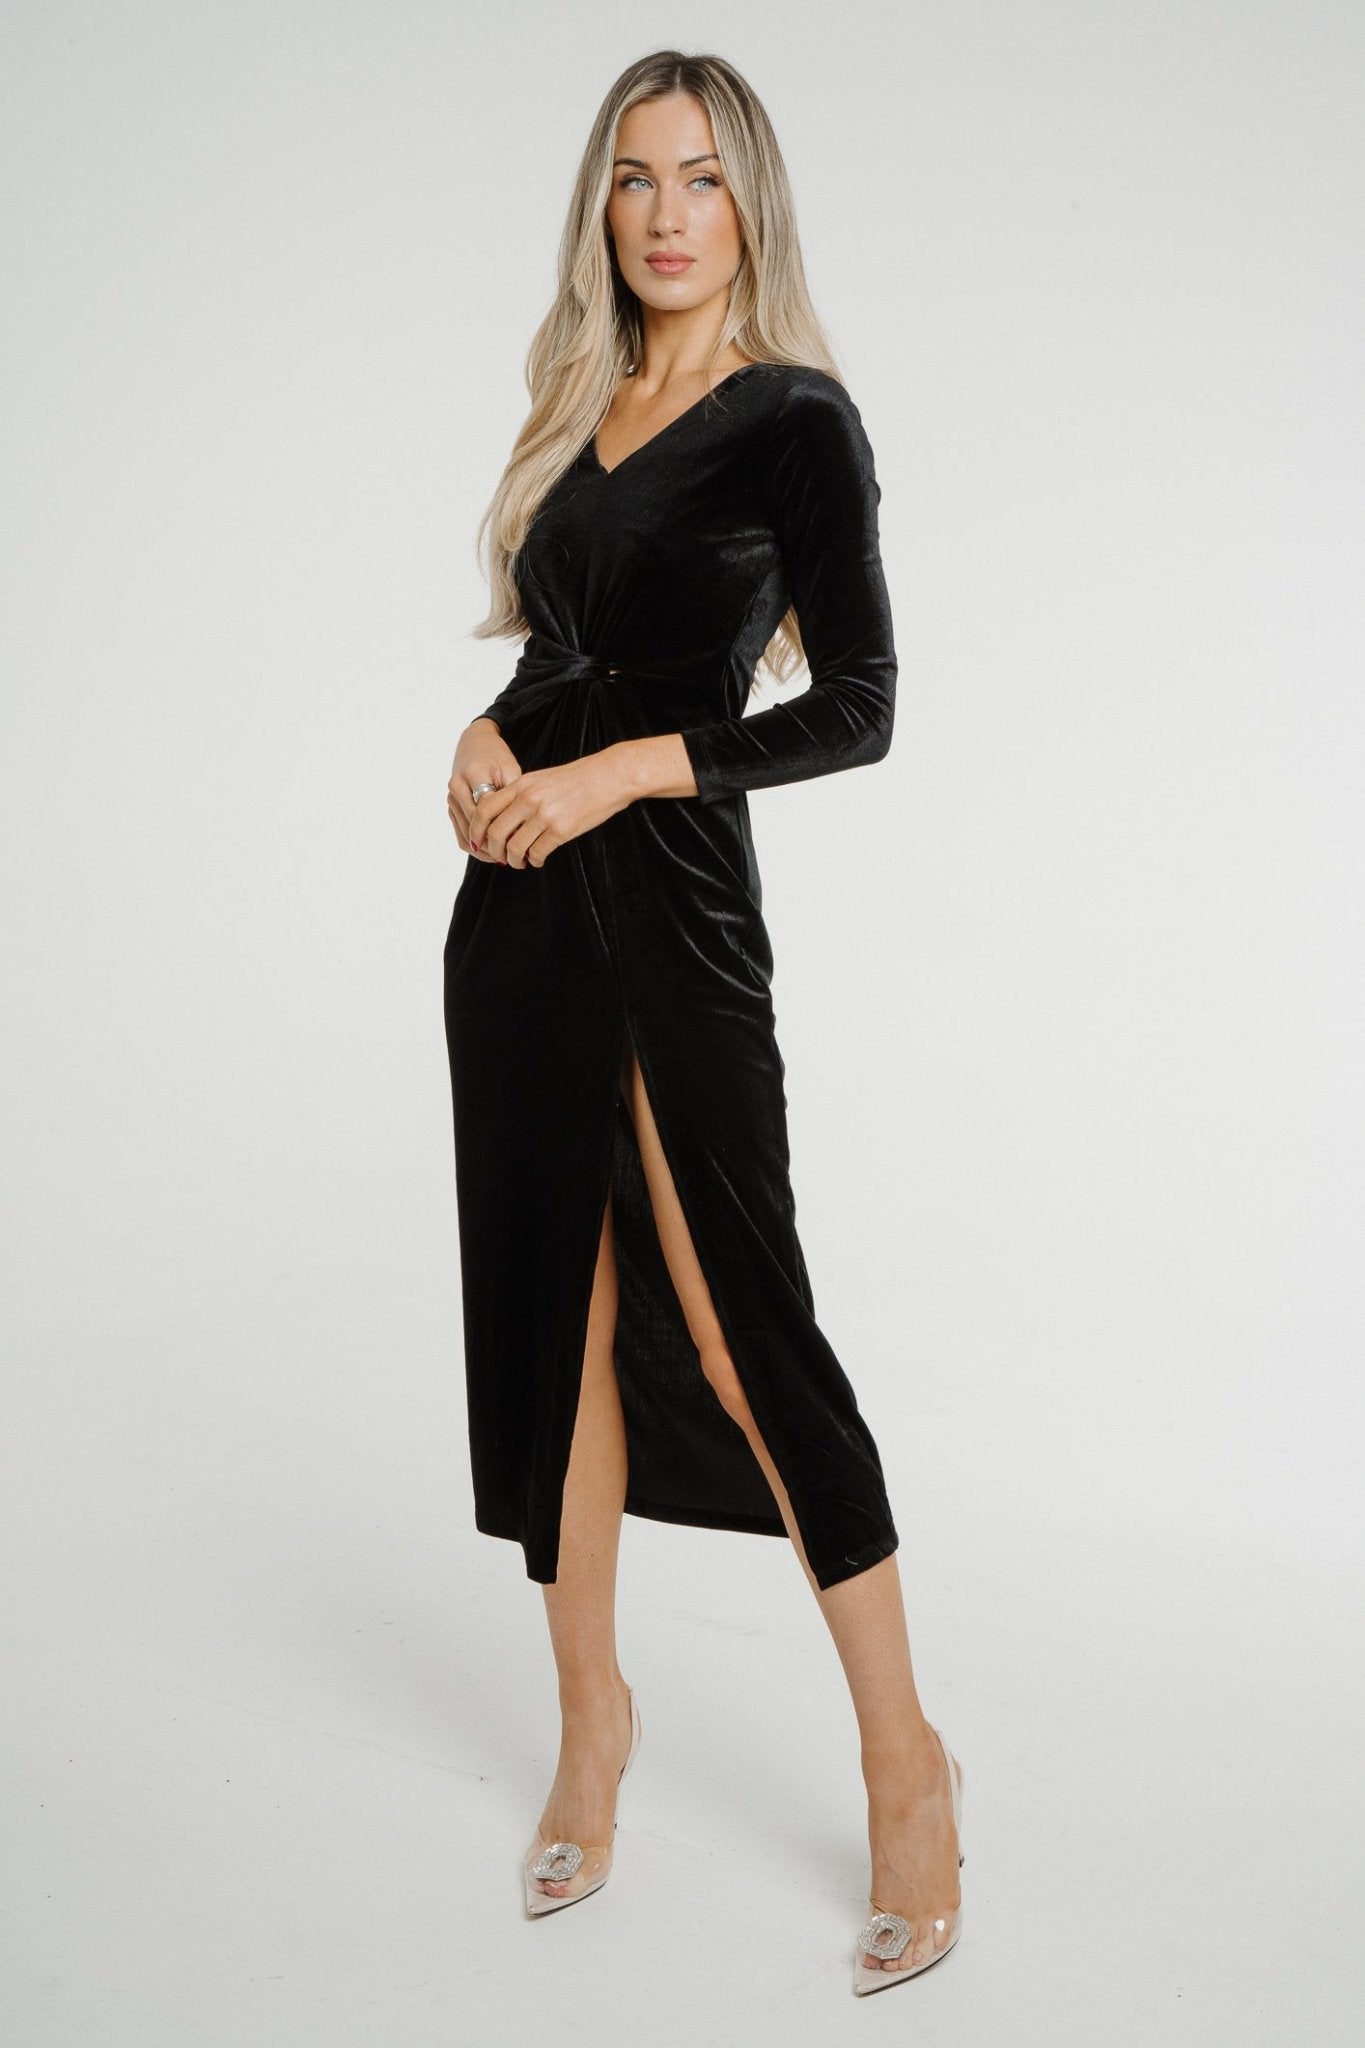 Holly Velvet Midi Dress In Black - The Walk in Wardrobe